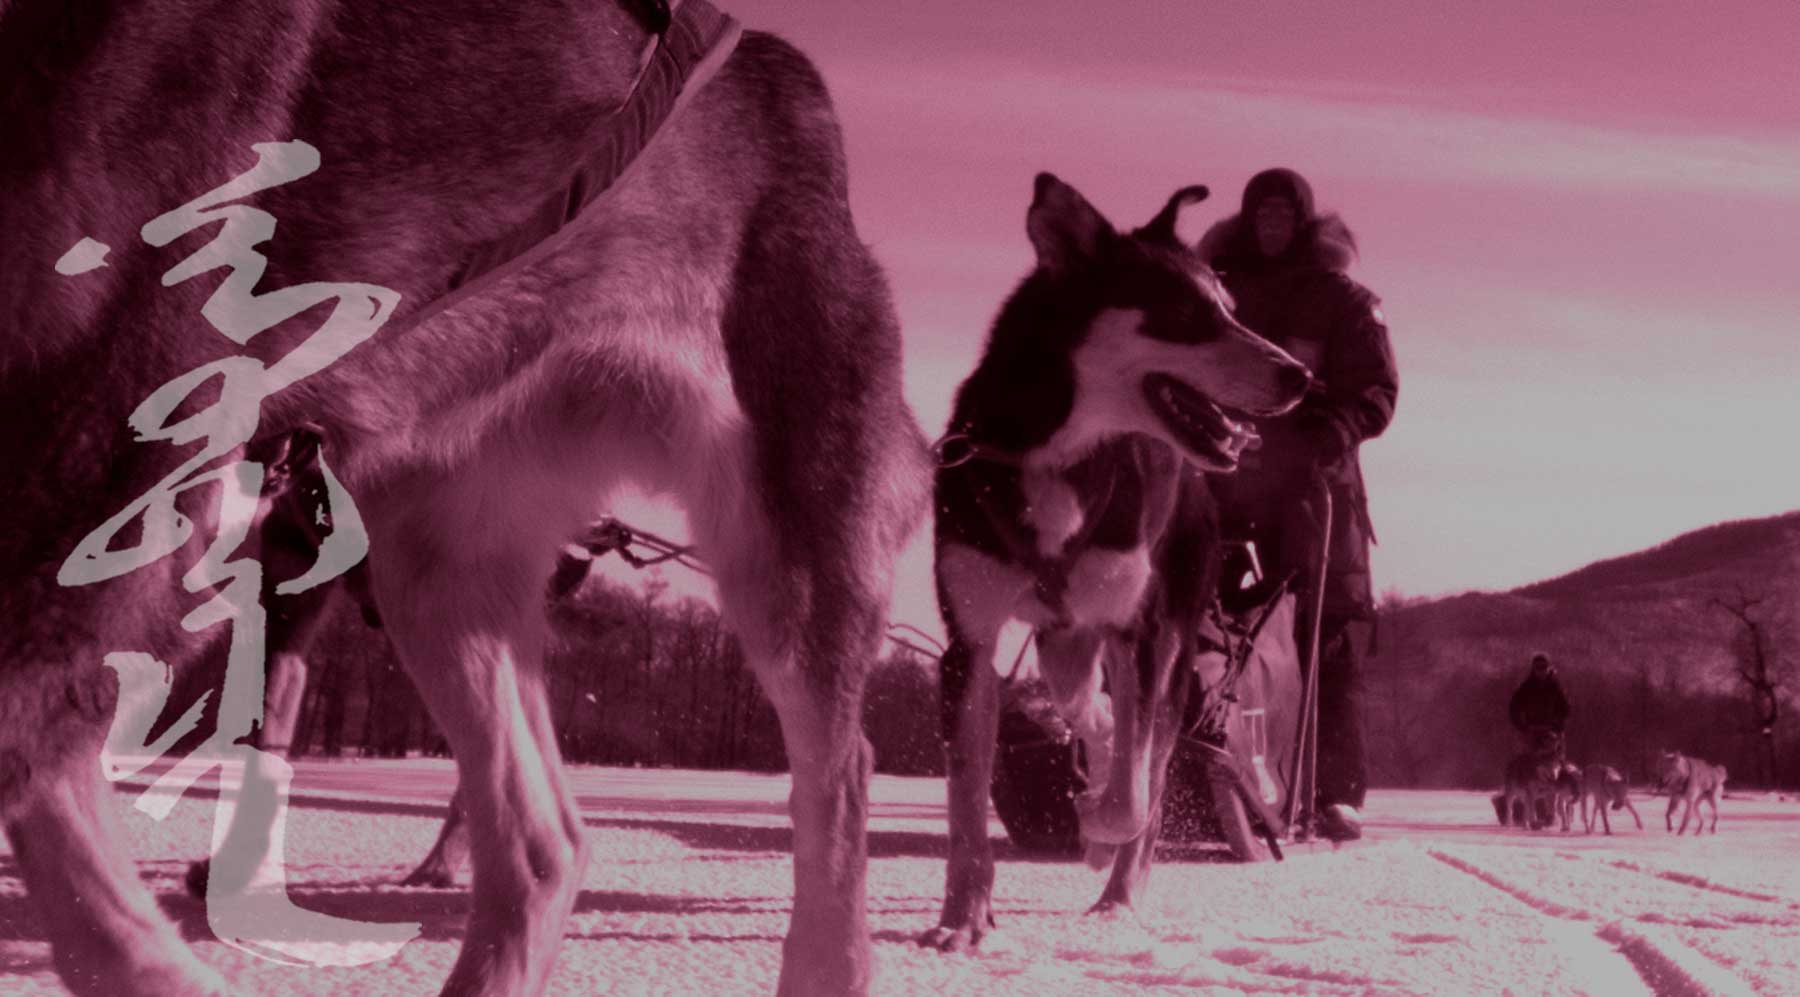 MONGOLIA TRAVEL PHOTOS - Dog Sledding Tours in Mongolia - Winter Travel - Mongolia Nomads Tours